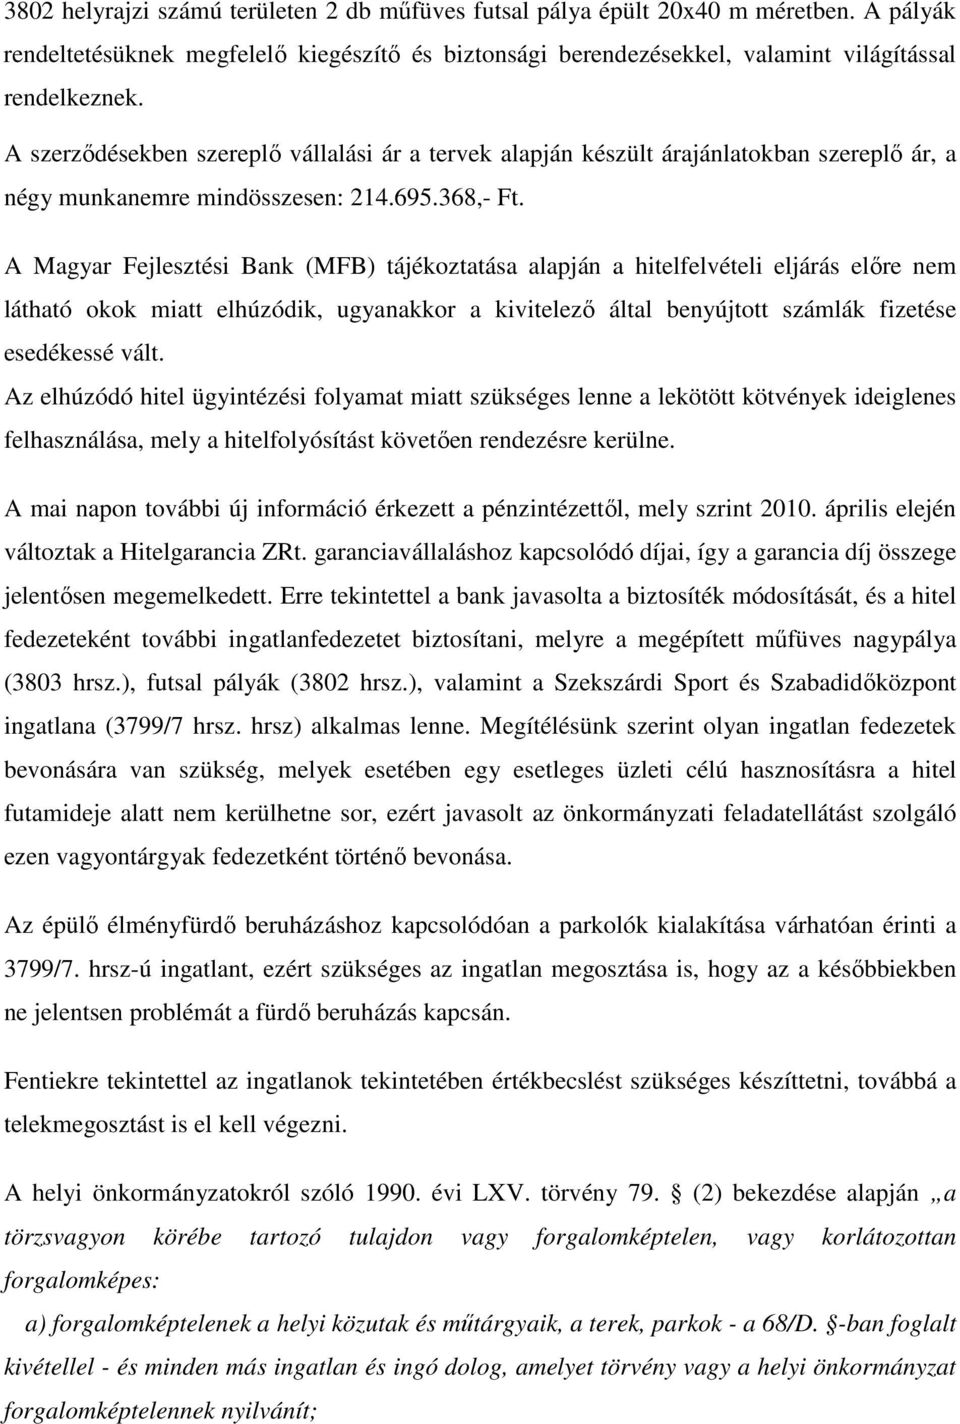 A Magyar Fejlesztési Bank (MFB) tájékoztatása alapján a hitelfelvételi eljárás elıre nem látható okok miatt elhúzódik, ugyanakkor a kivitelezı által benyújtott számlák fizetése esedékessé vált.